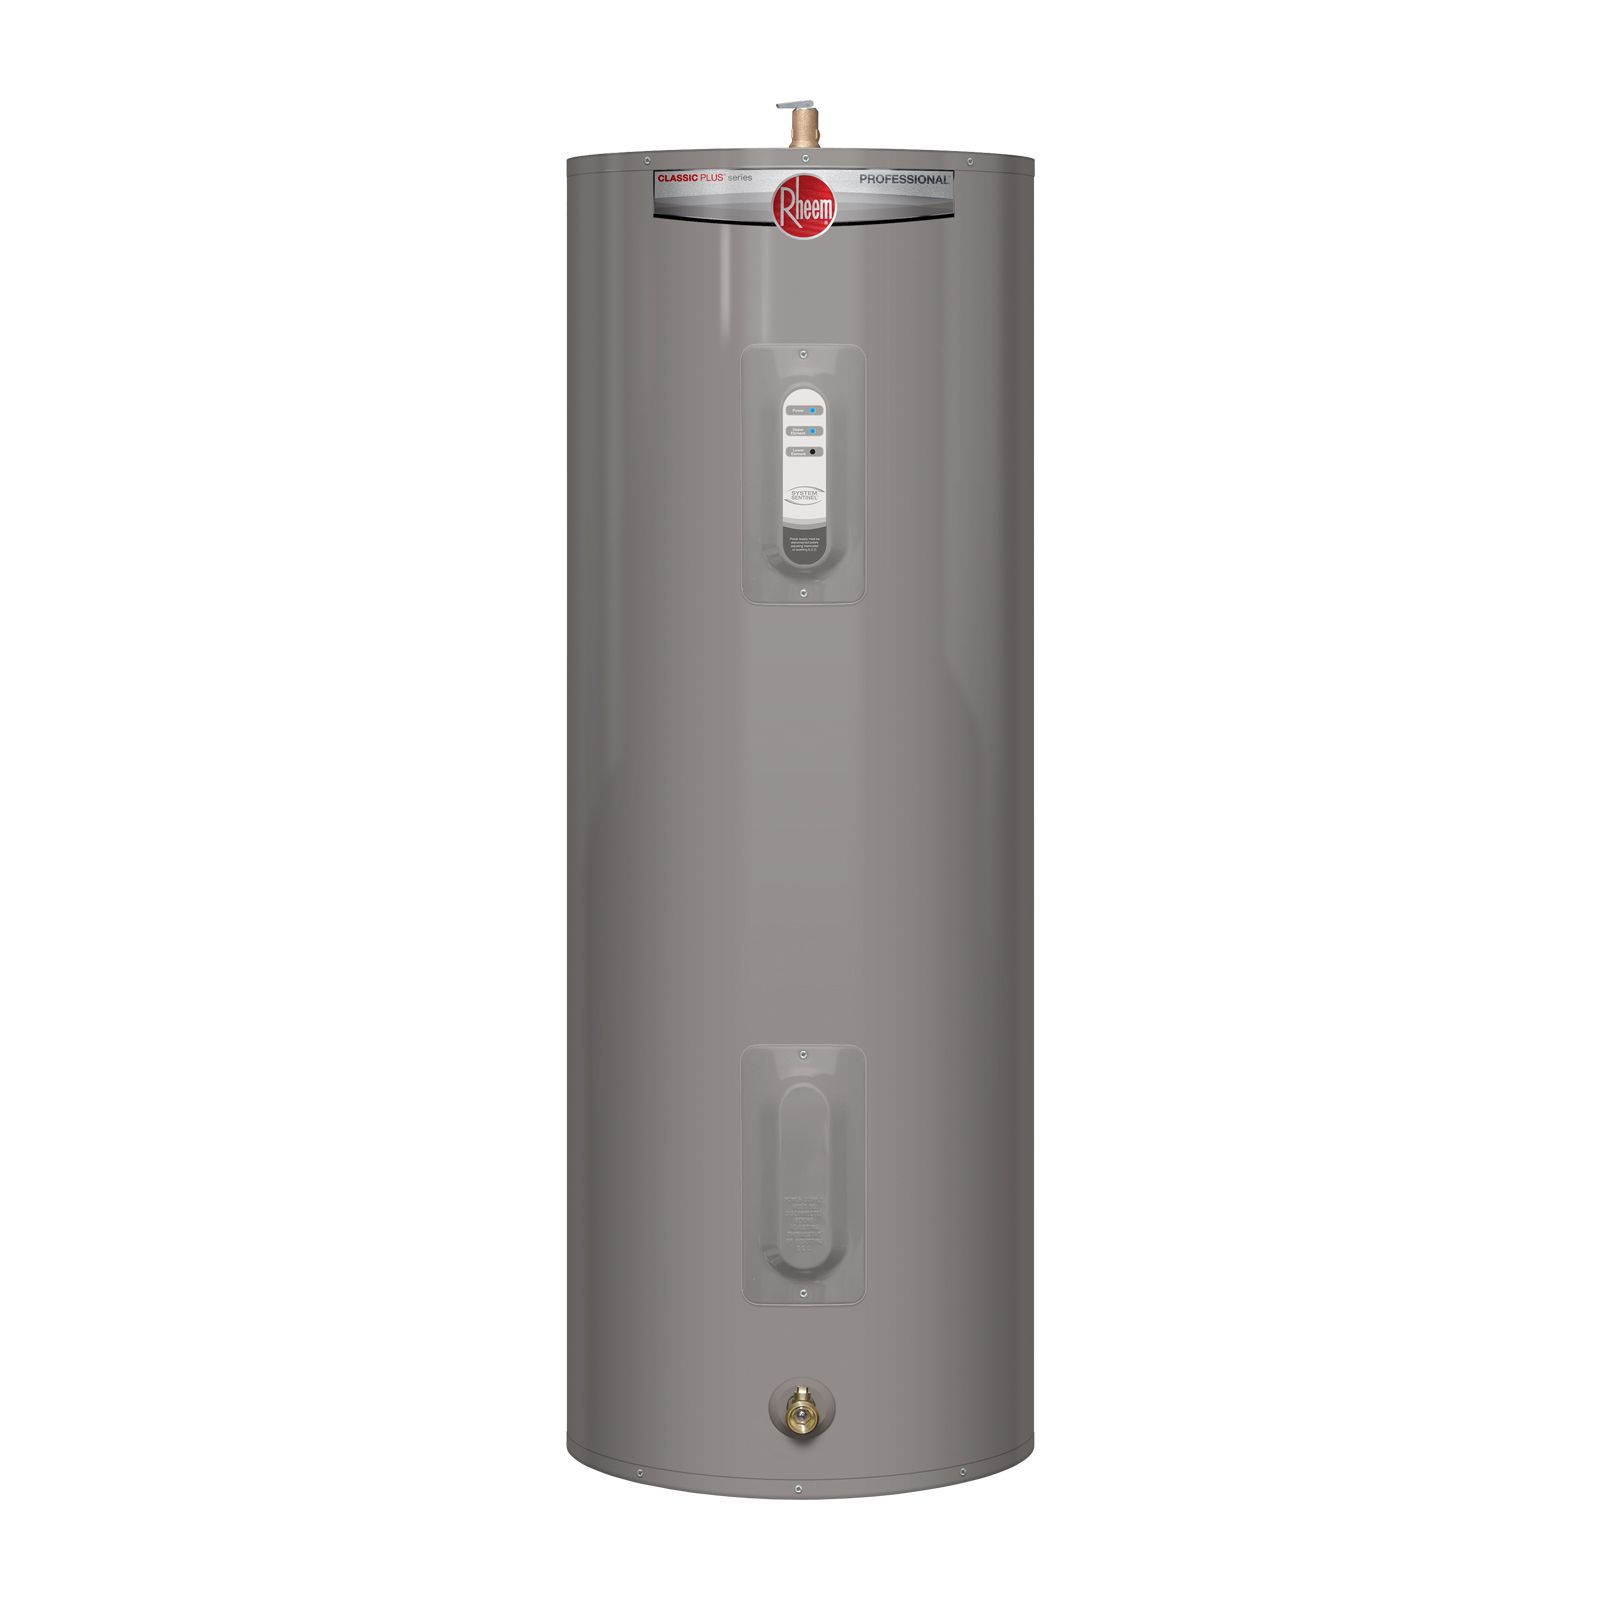 Rheem Professional Water Heater - www.inf-inet.com